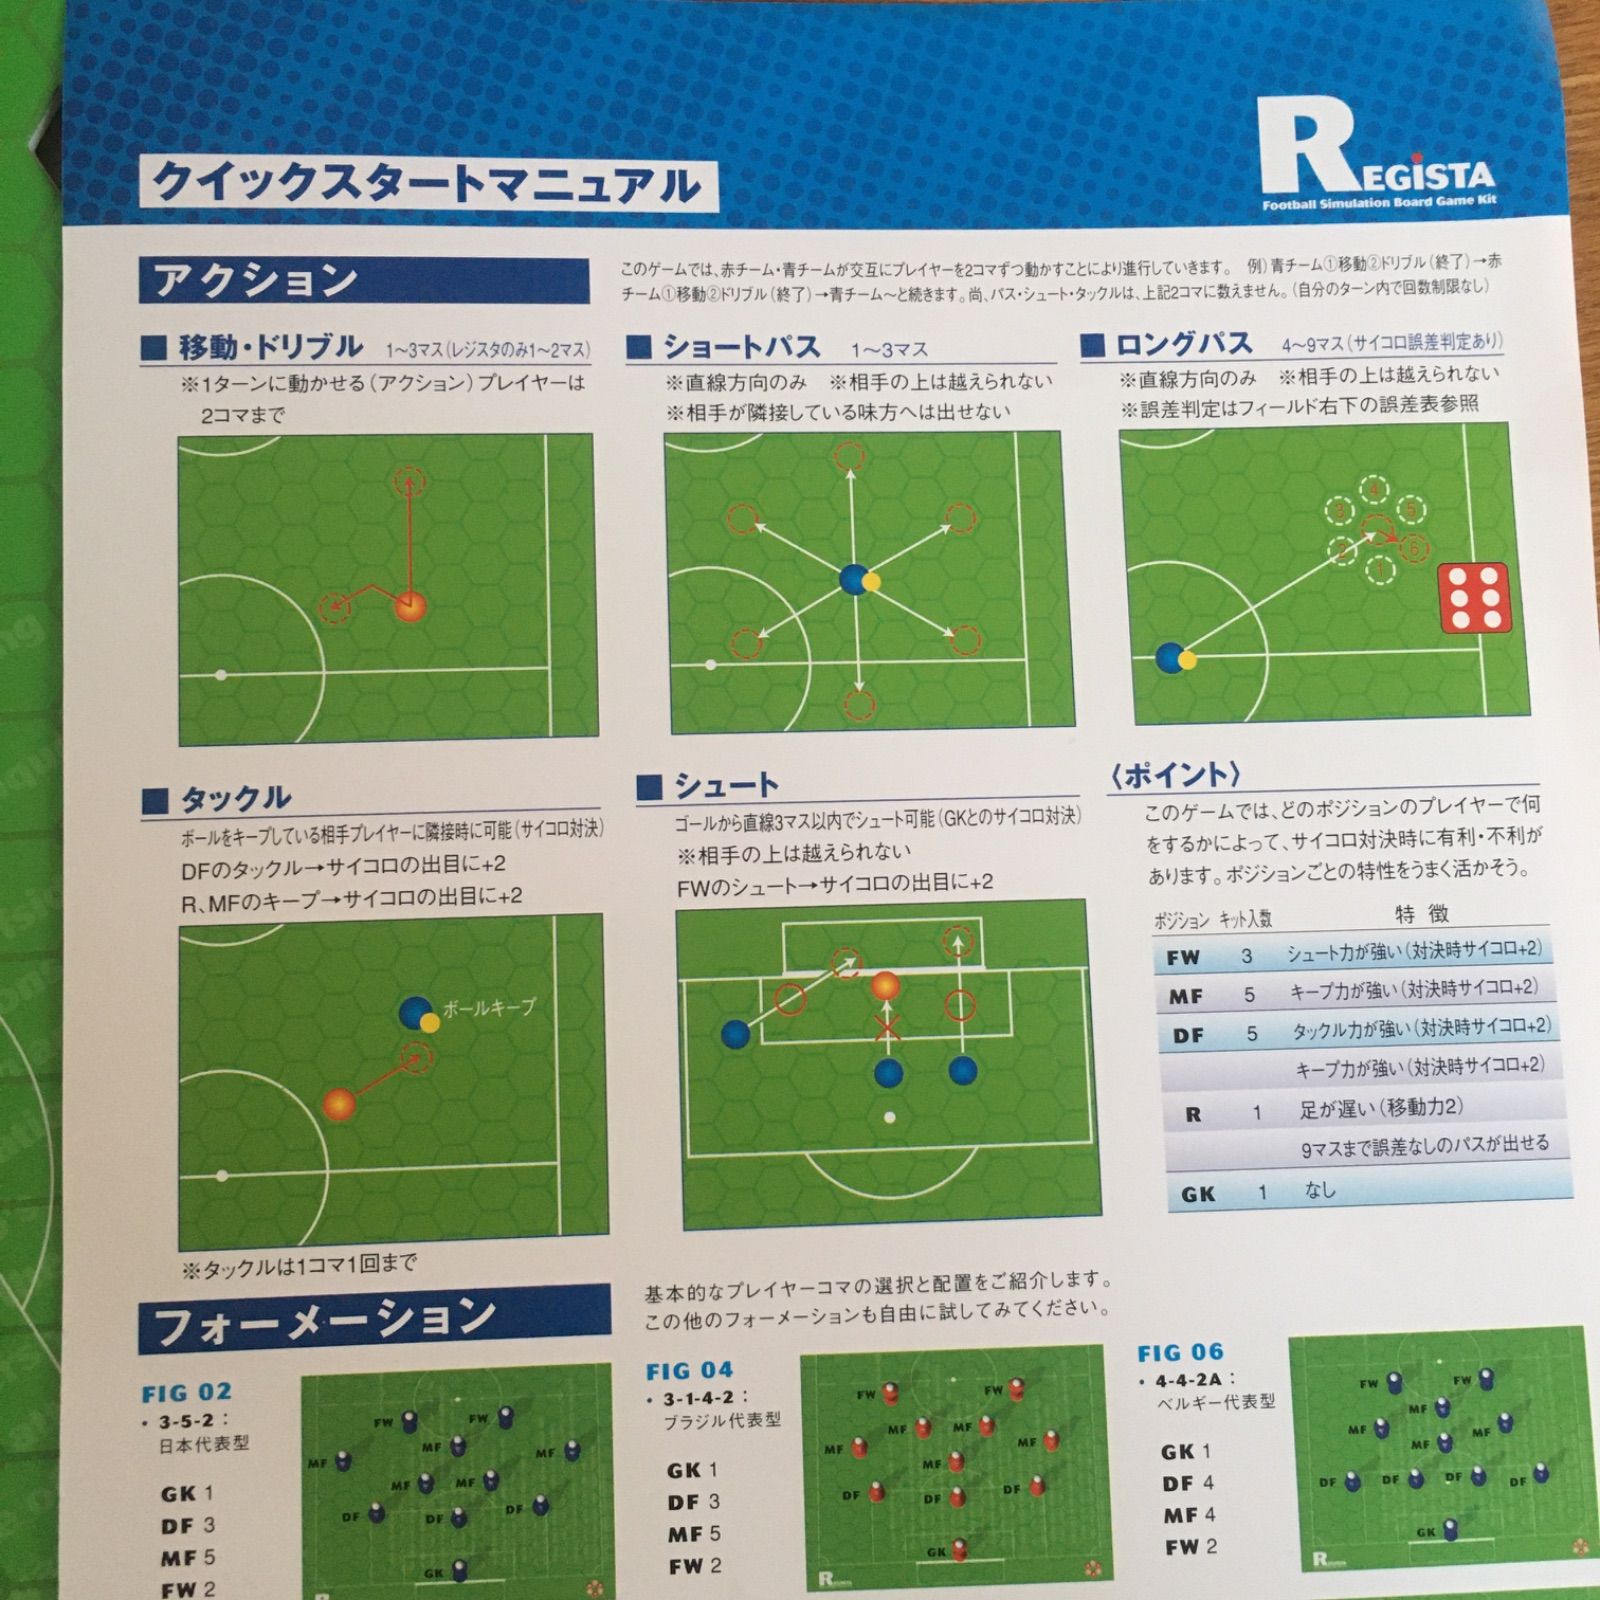 ボードゲーム Regista -レジスタ- フットボールシミュレーションゲーム 